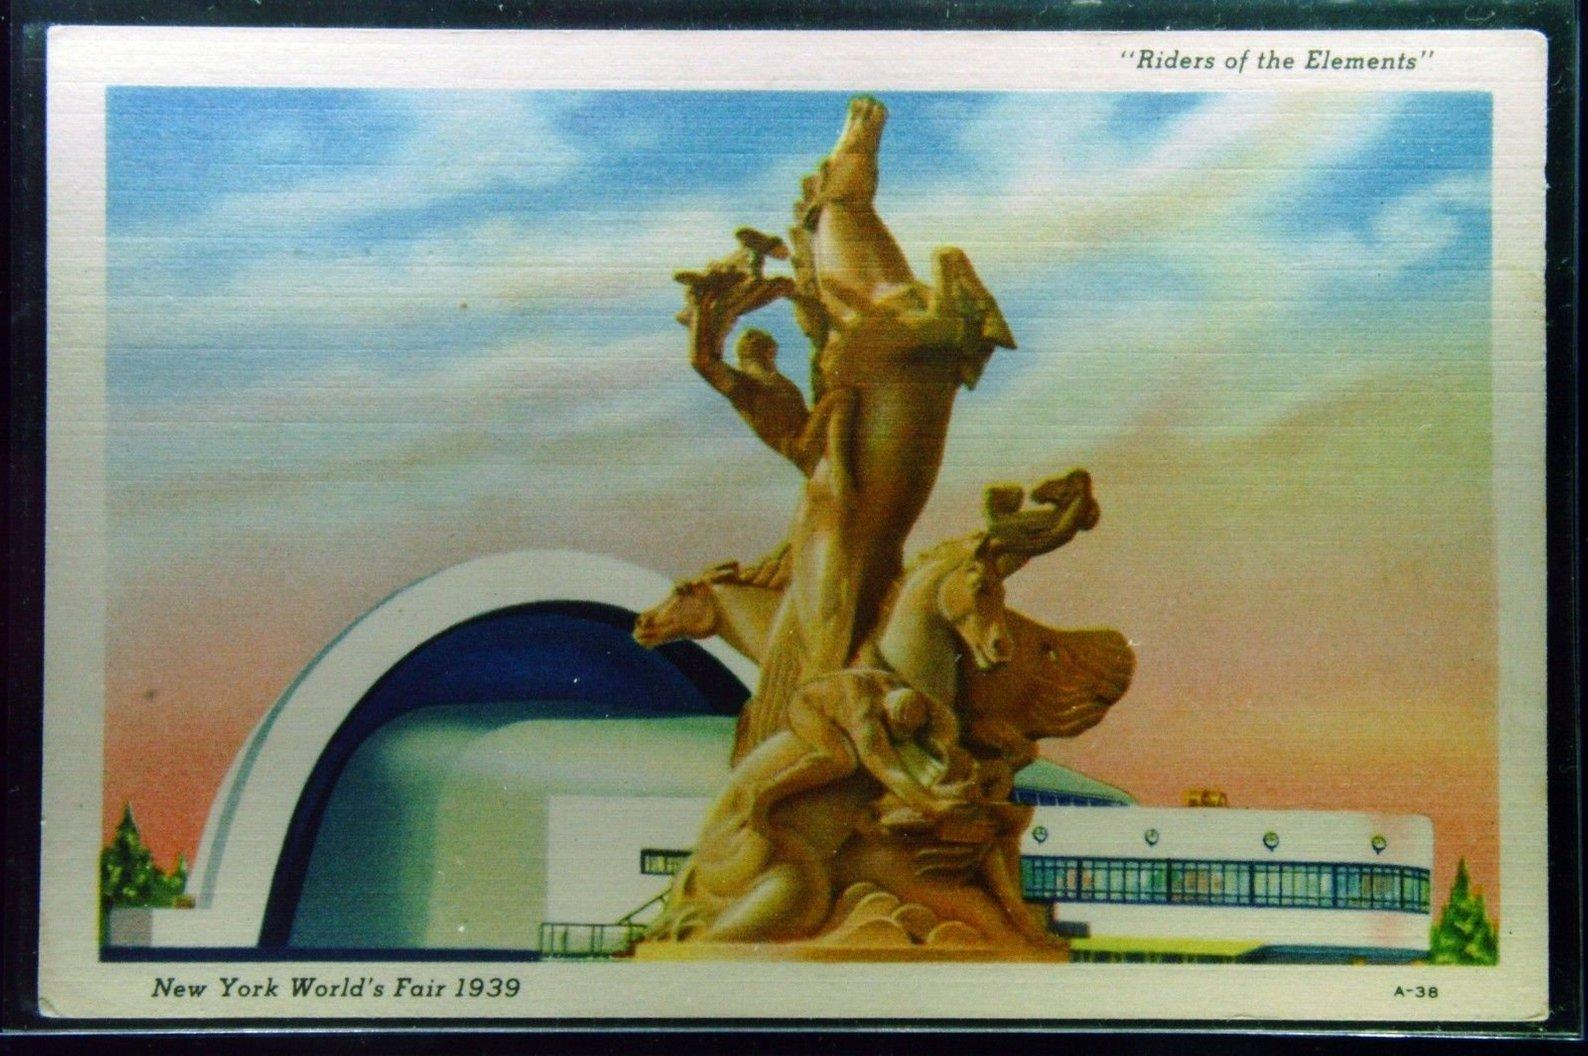 1.000 Stück Museumsqualität Sammlung von Kunst und Objekten aus NYC 1939 Worlds Fair steht zum Verkauf.

Diese Skulptur, 